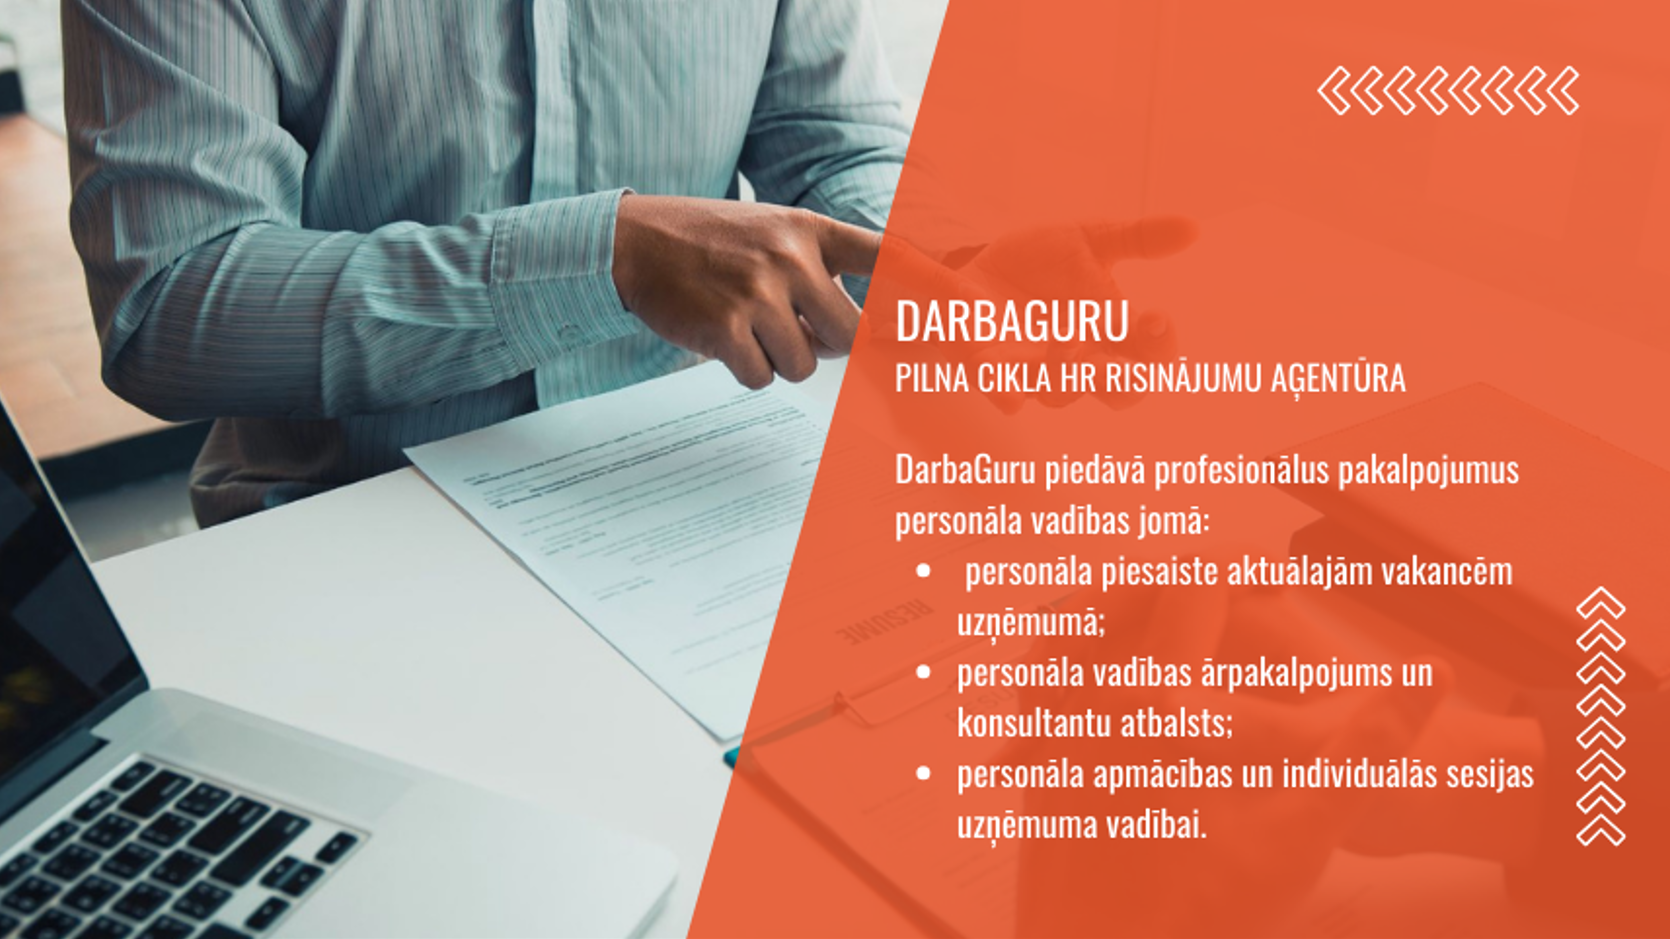 DarbaGuru - pilna cikla HR risinājumu aģentūra